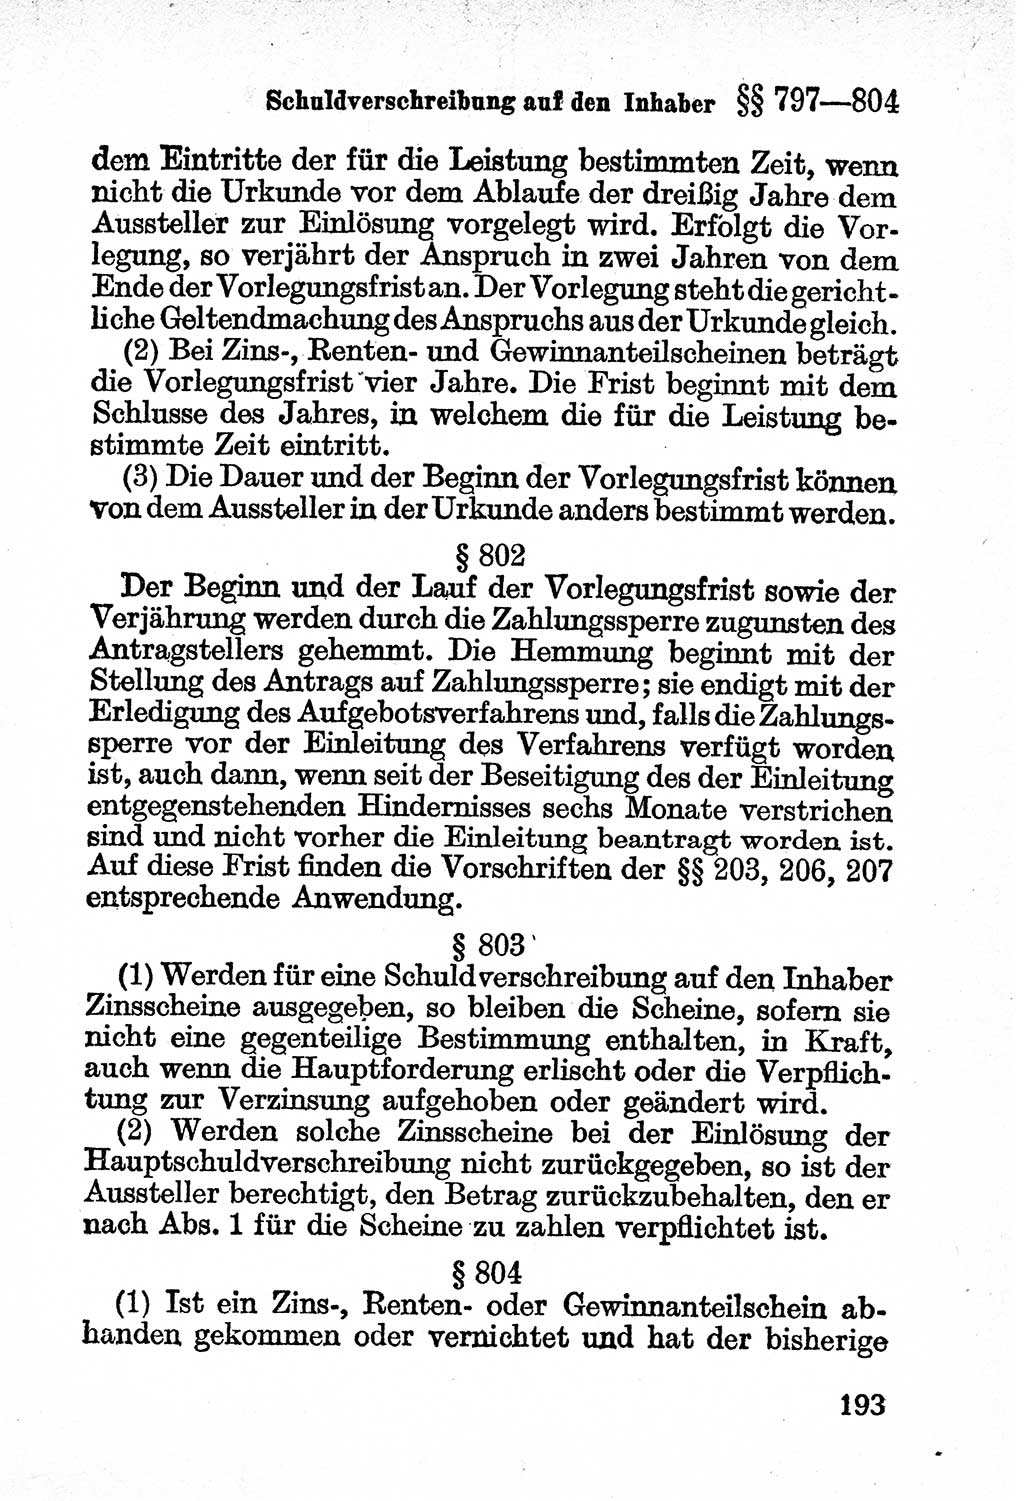 Bürgerliches Gesetzbuch (BGB) nebst wichtigen Nebengesetzen [Deutsche Demokratische Republik (DDR)] 1956, Seite 193 (BGB Nebenges. DDR 1956, S. 193)